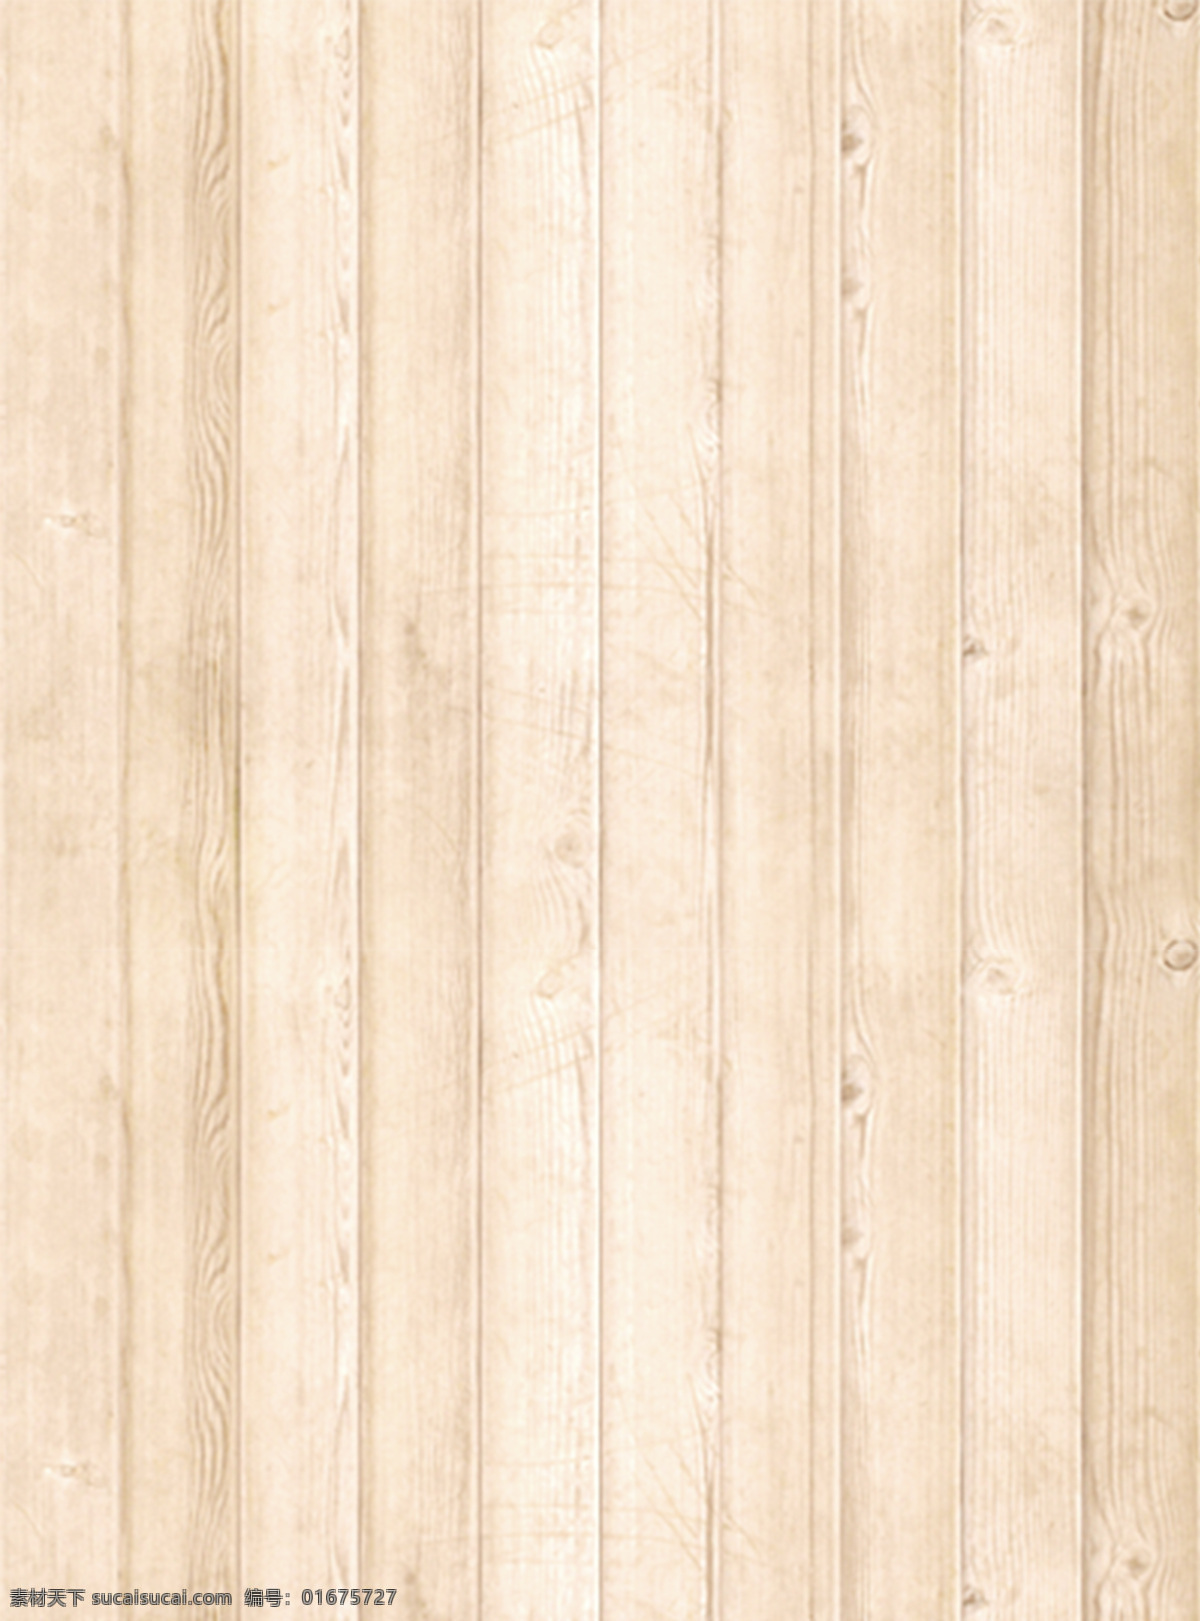 浅色 木板 纹理 背景 温馨 排列 自然 木质 木头 木纹 肌理 底纹 插图 简约 朴素 质朴 黄色 高清 木 木地板 设计元素素材 设计背景素材 底纹边框 背景底纹